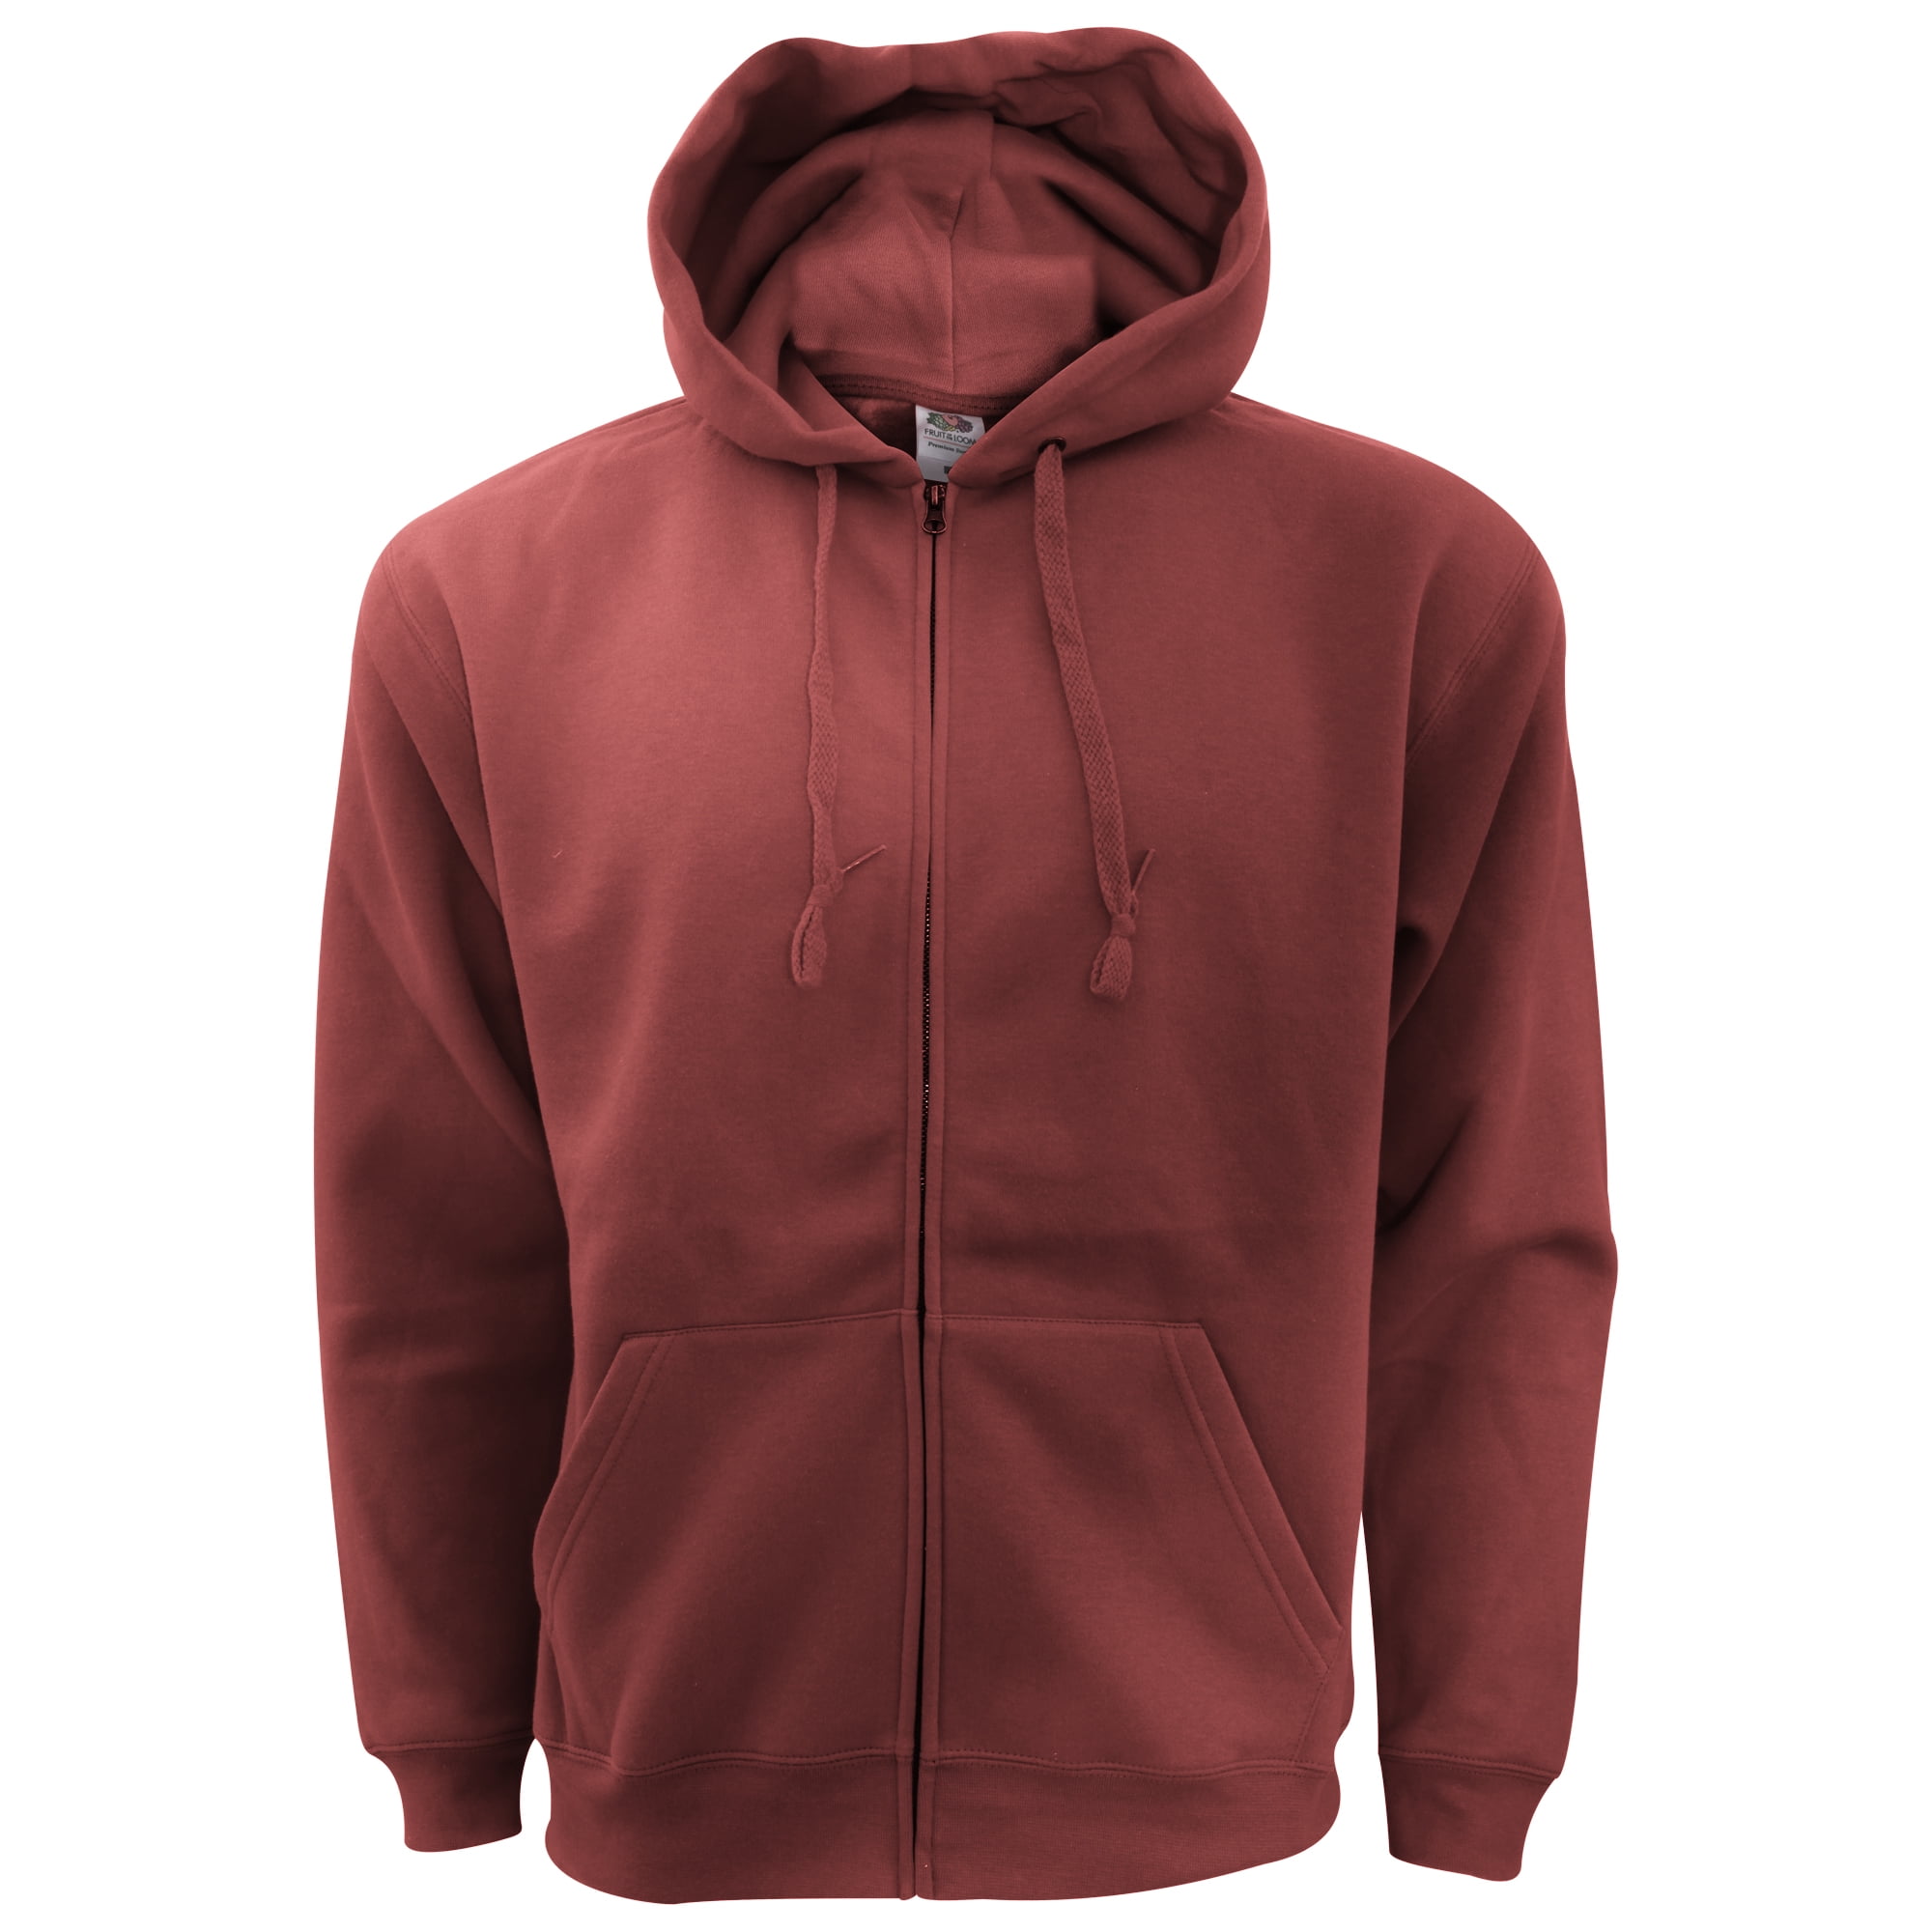 burgundy zip up hoodie mens